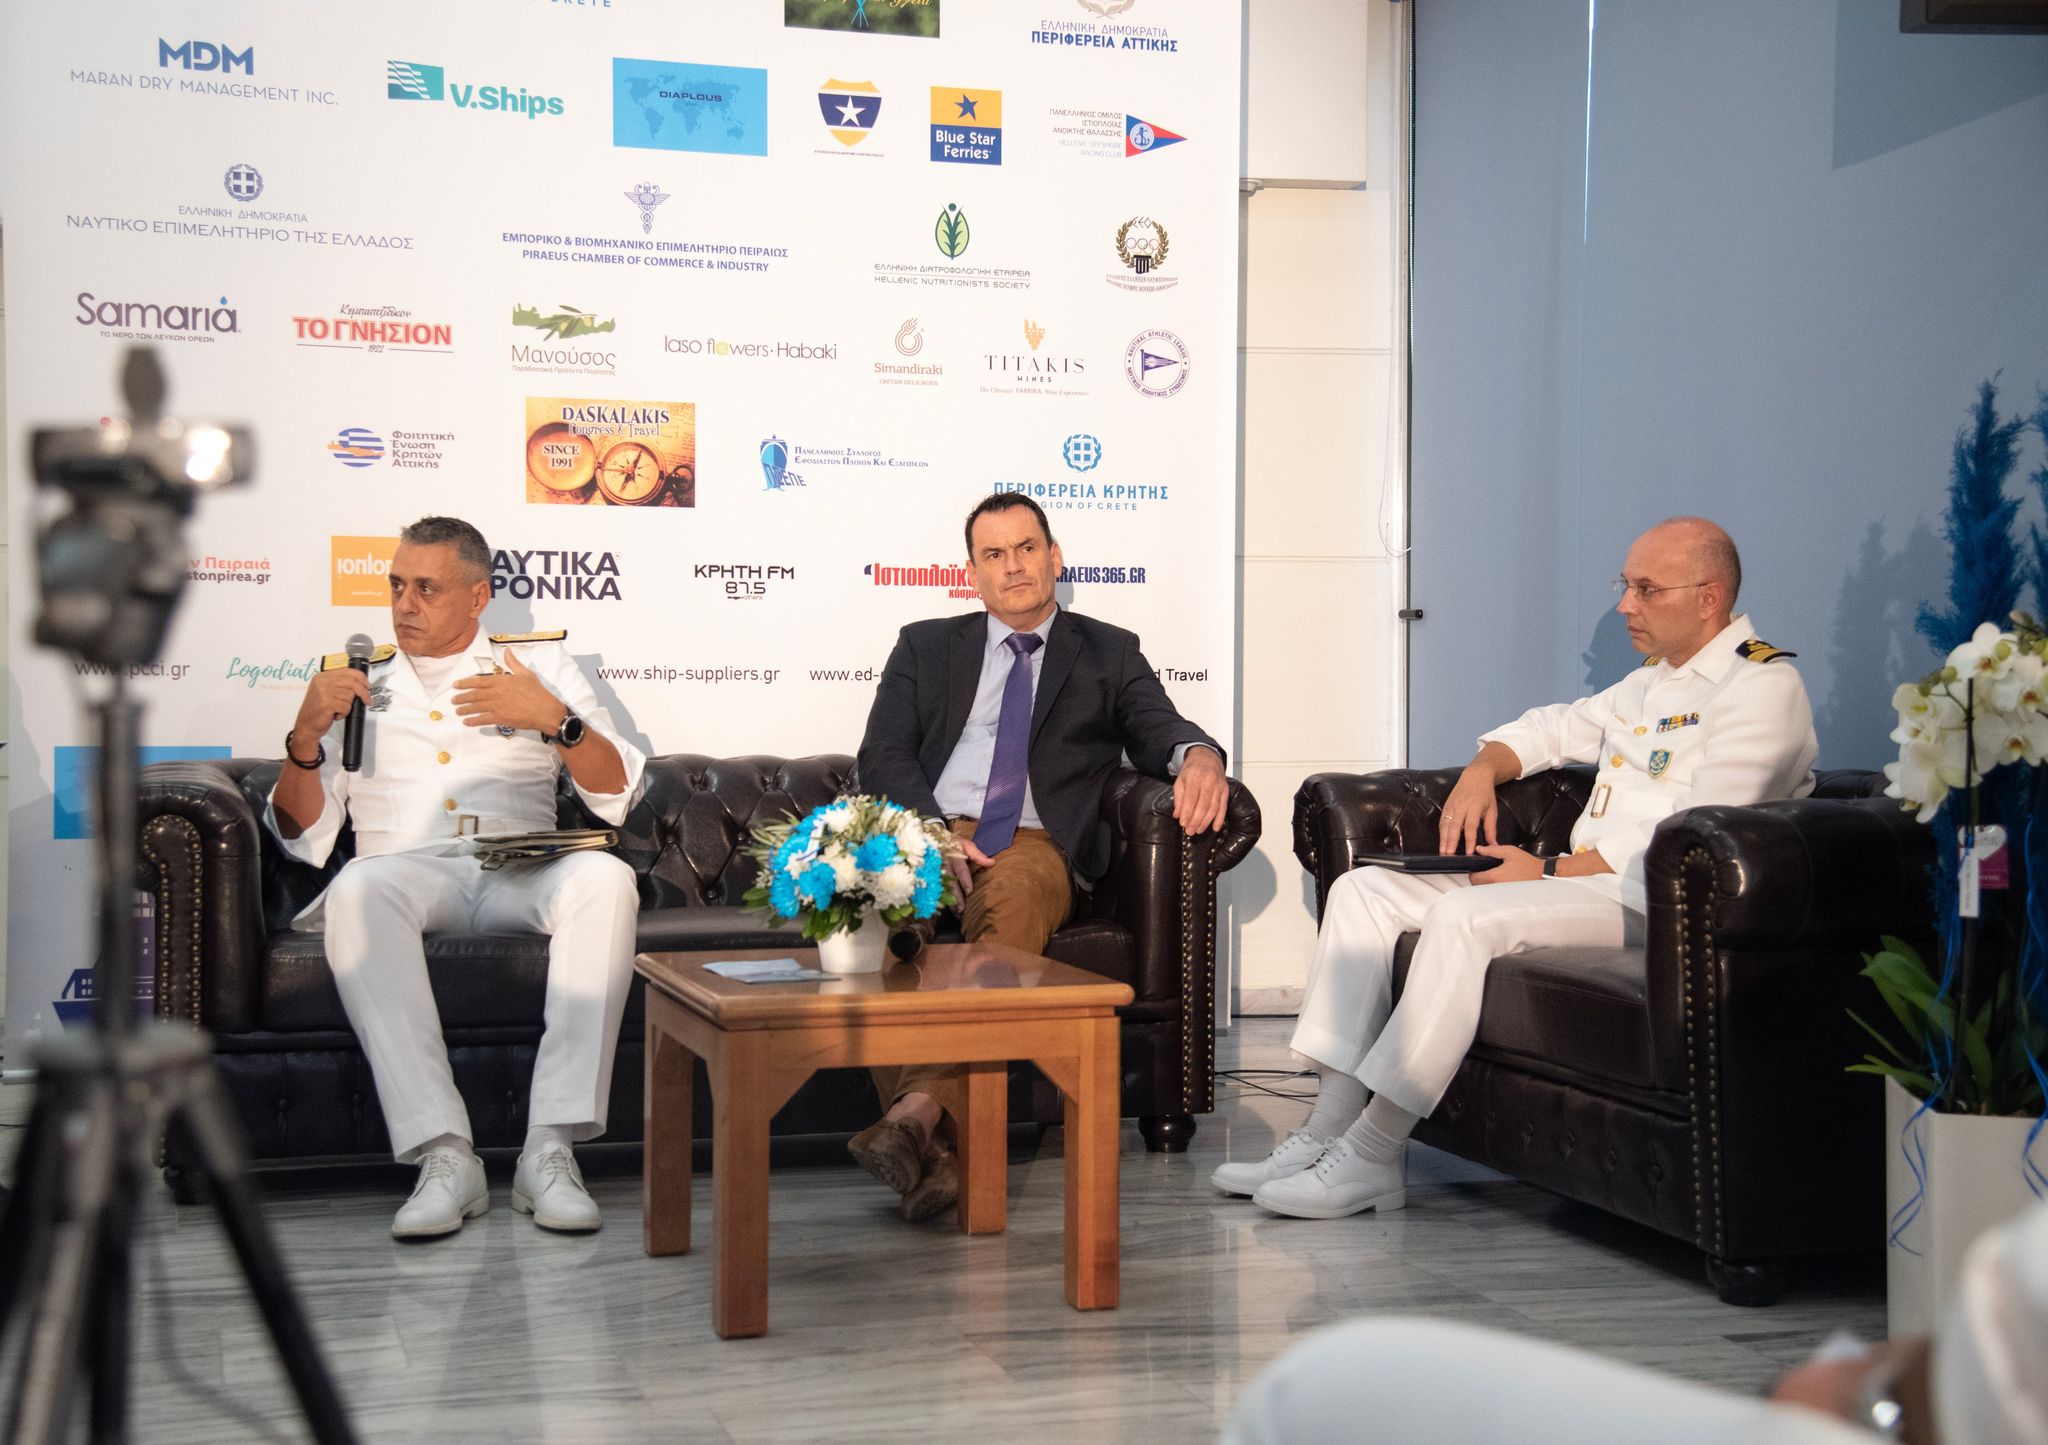 Με εξαιρετική επιτυχία πραγματοποιήθηκε και φέτος στο Μικρολίμανο η εκδήλωση με θέμα «Καλές θάλασσες με υγεία και ασφάλεια» - DASKALAKIS CONGRESS-TRV